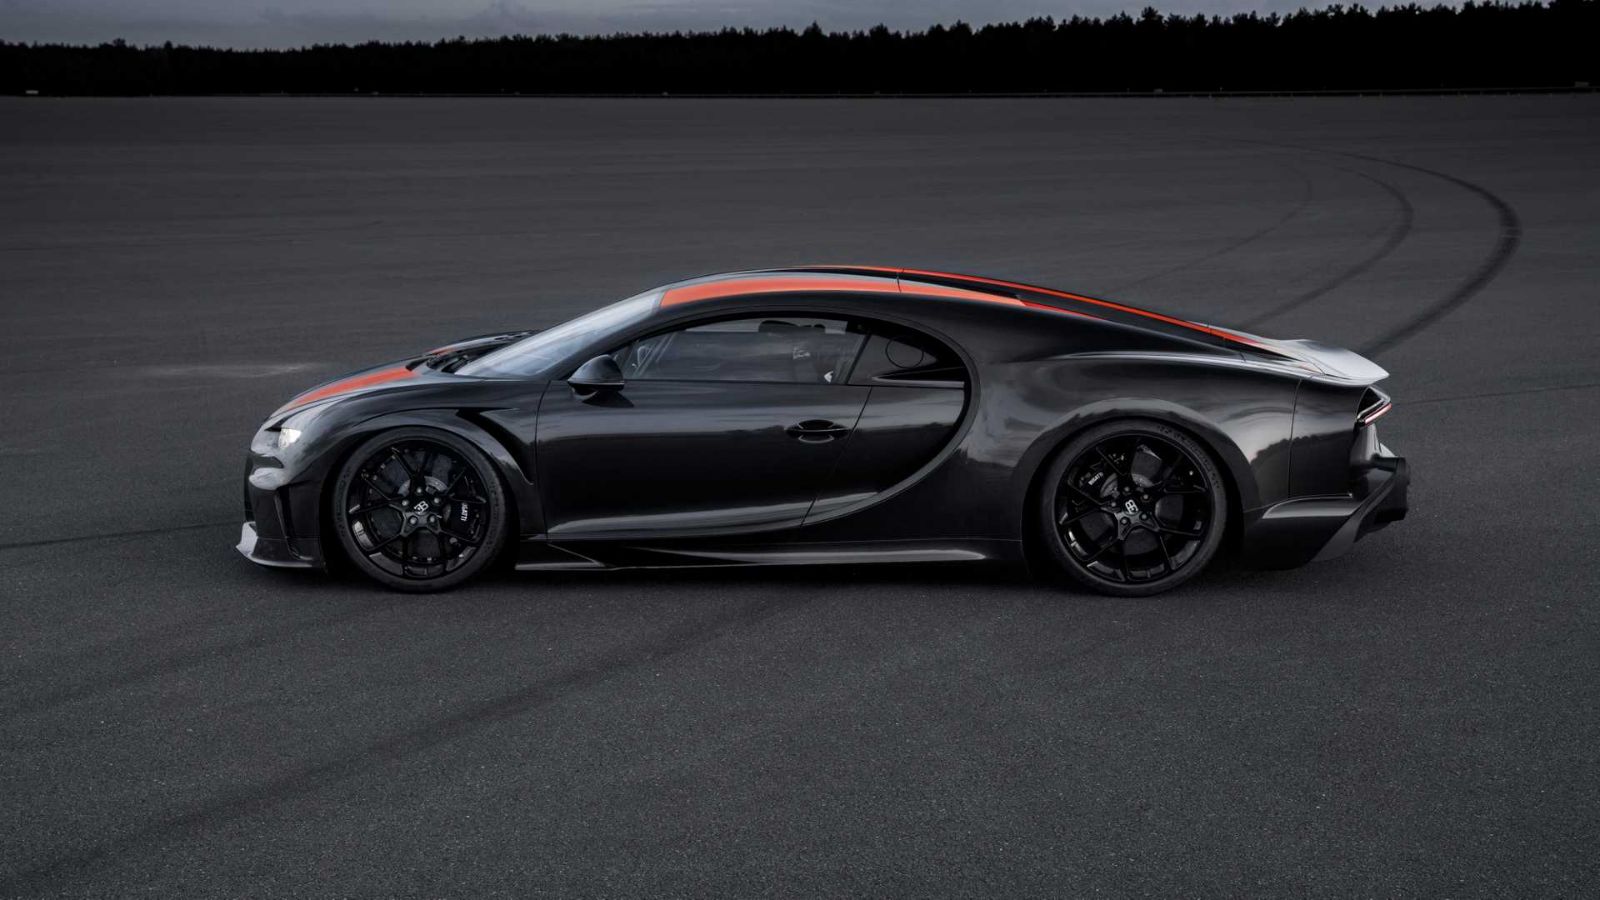 Η Bugatti θα κυνηγήσει και το ρεκόρ των 500 χλμ./ ώρα! – carzine.gr